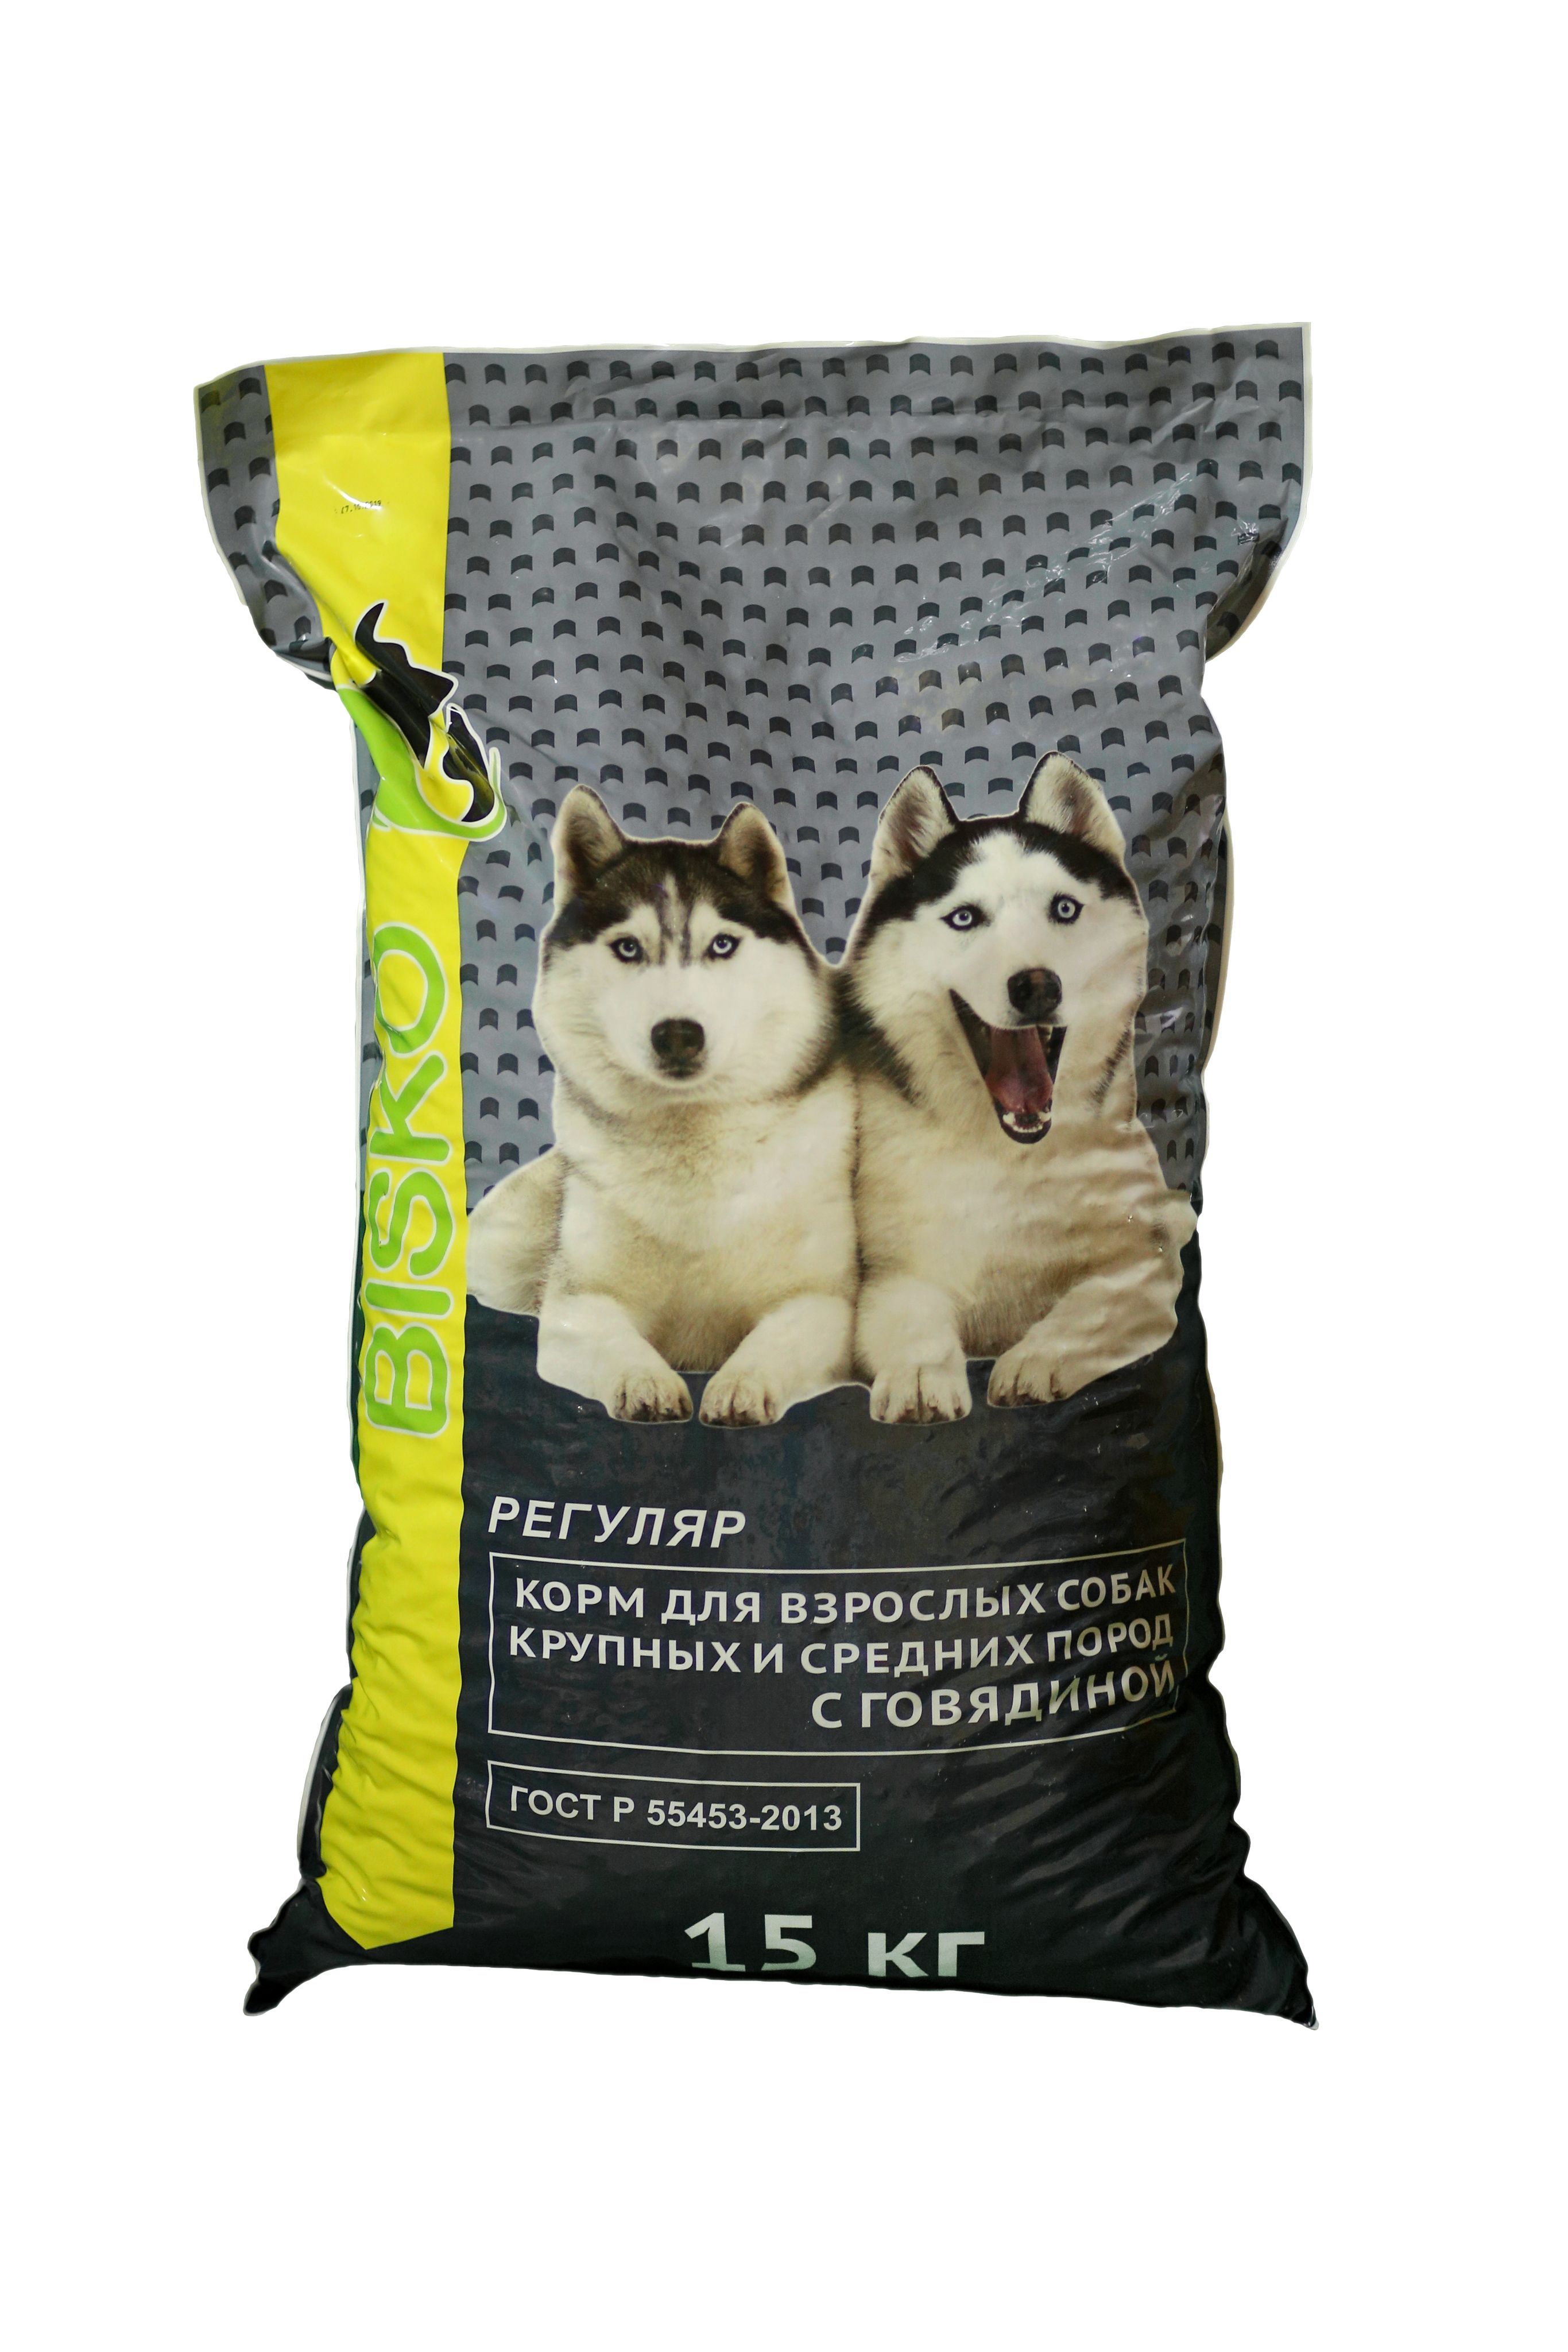 Дешевые корма для собак 15 кг